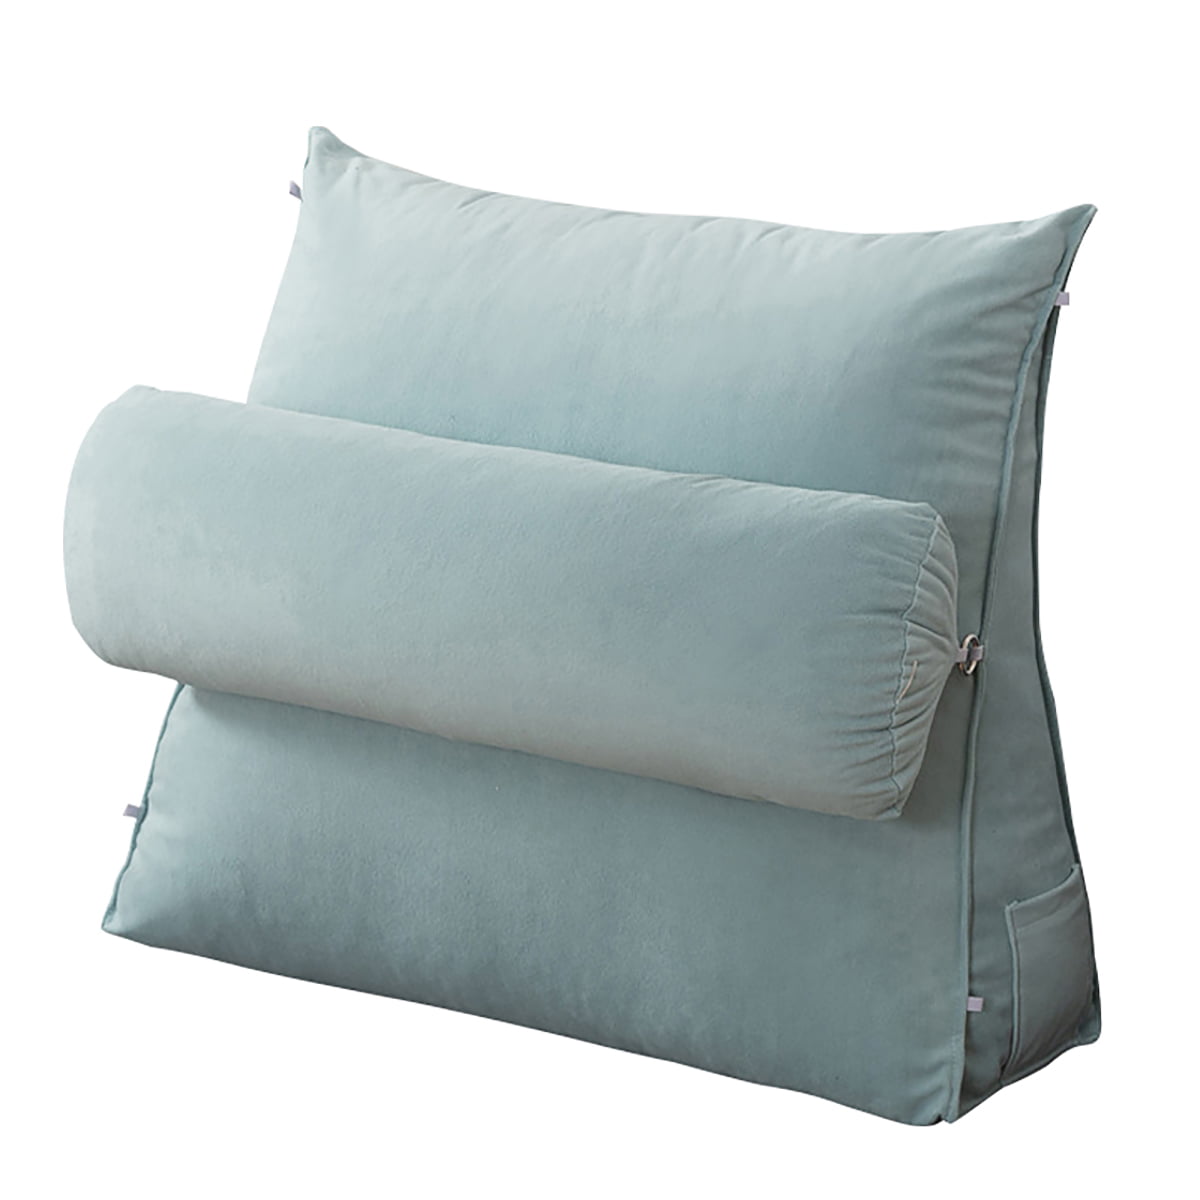 Neck Support Pillow Lumbar Suport Pillow, Size: 18